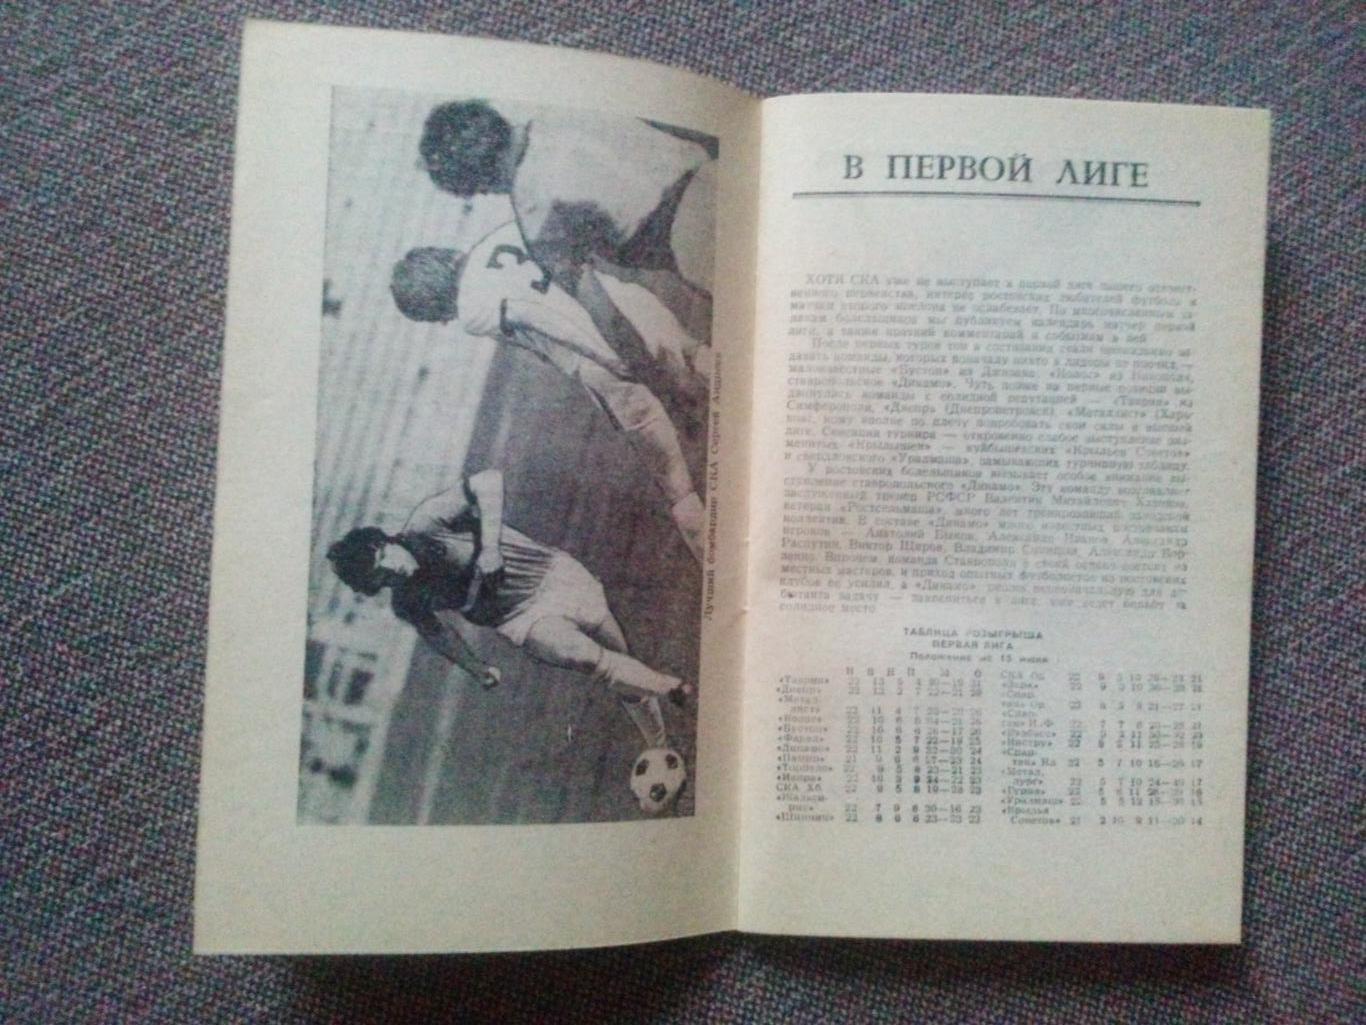 Футбол Календарь - справочник Ростов на Дону 1980 г. ( 2 - й круг ) Спорт 6